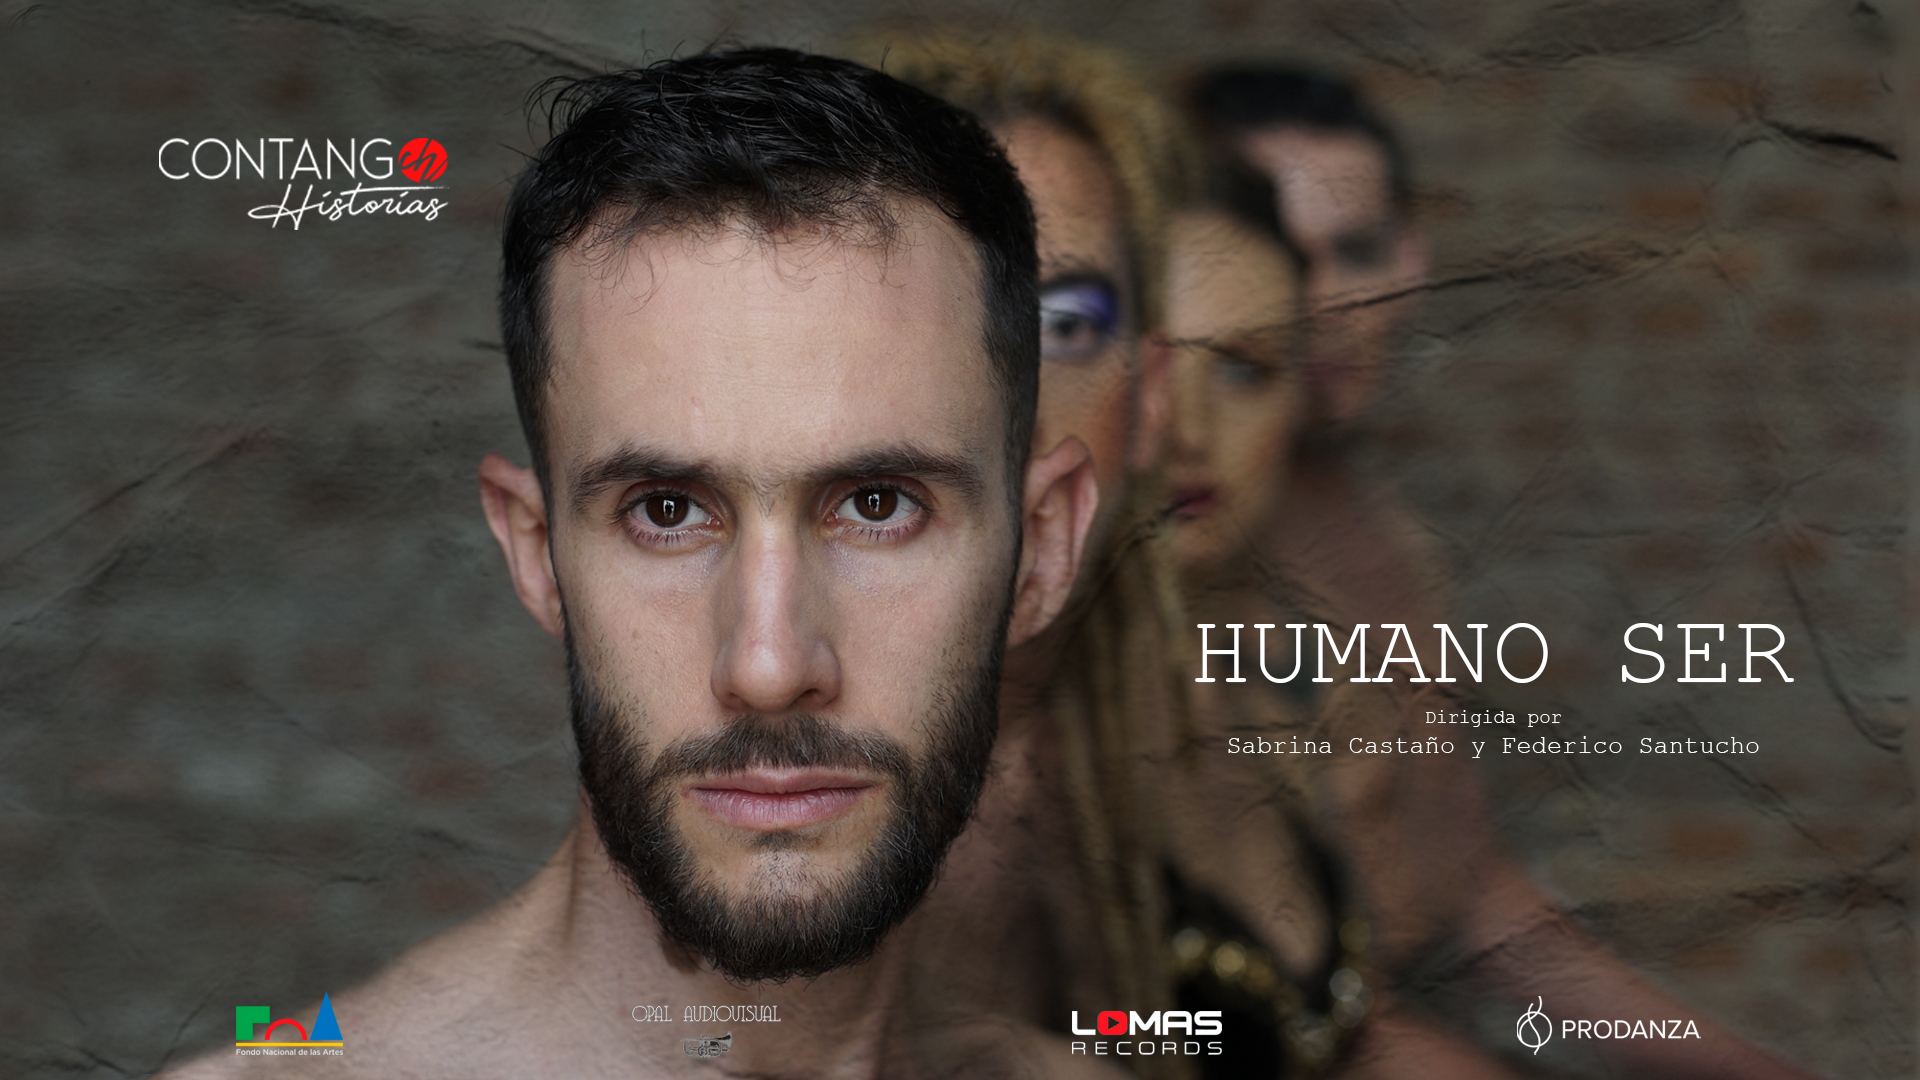  Humano Ser se presenta en la Semana del Tango en el Centro Cultural Borges